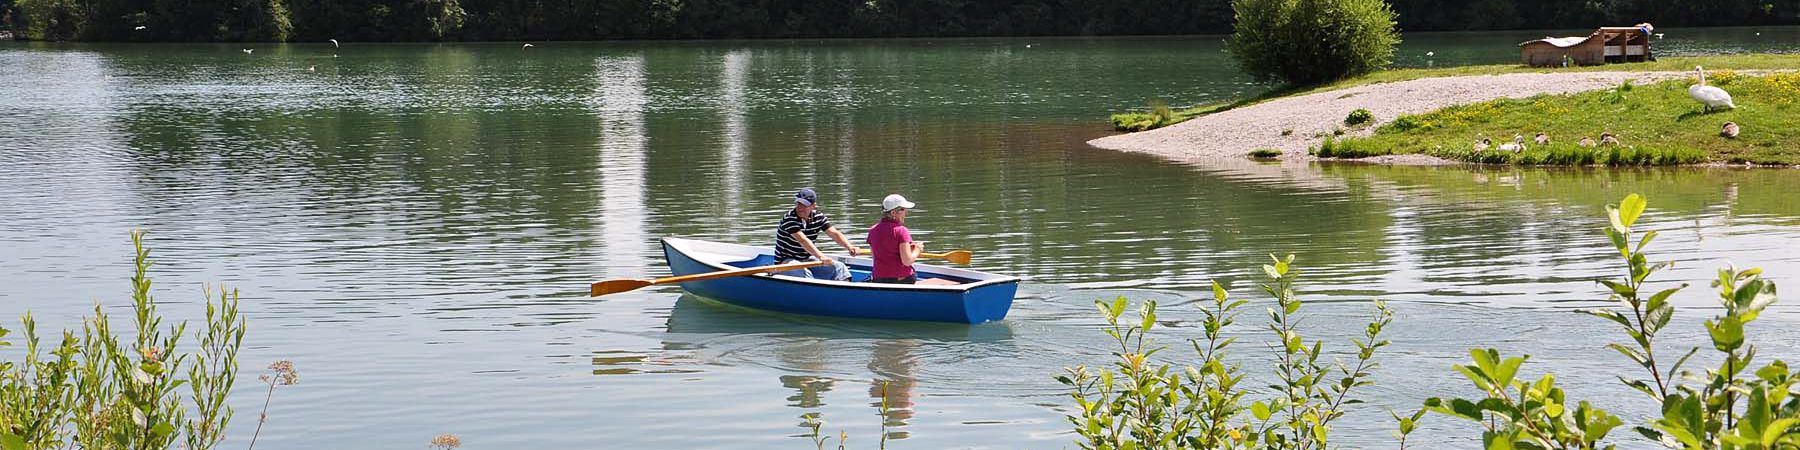 Bootfahren auf dem Lechsee